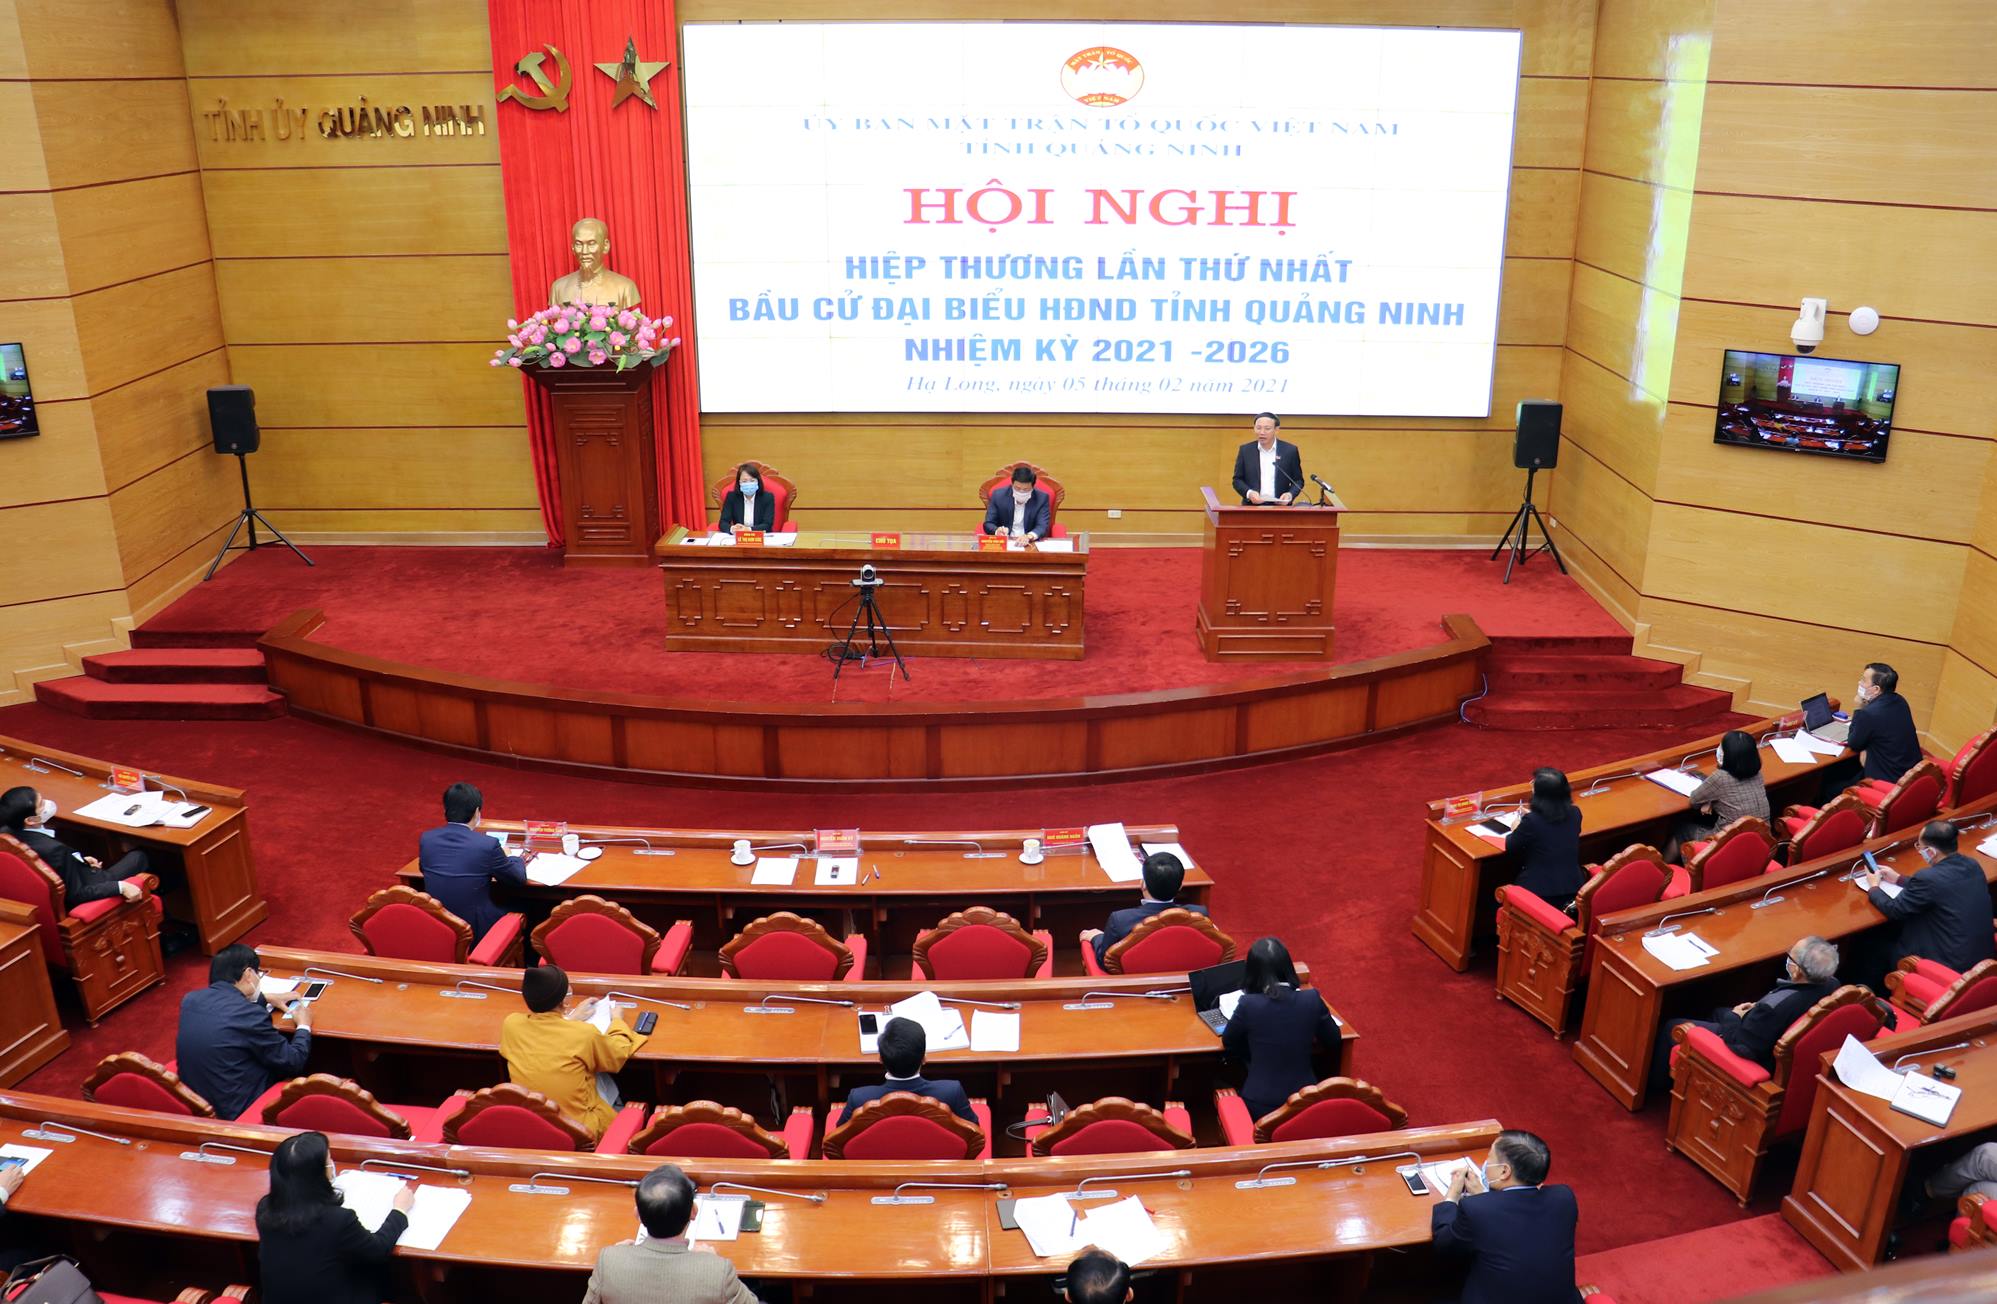 Ủy ban MTTQ Việt Nam tỉnh Quảng Ninh tổ chức Hội nghị hiệp thương lần thứ nhất bầu cử đại biểu HĐND tỉnh nhiệm kỳ 2021-2026.